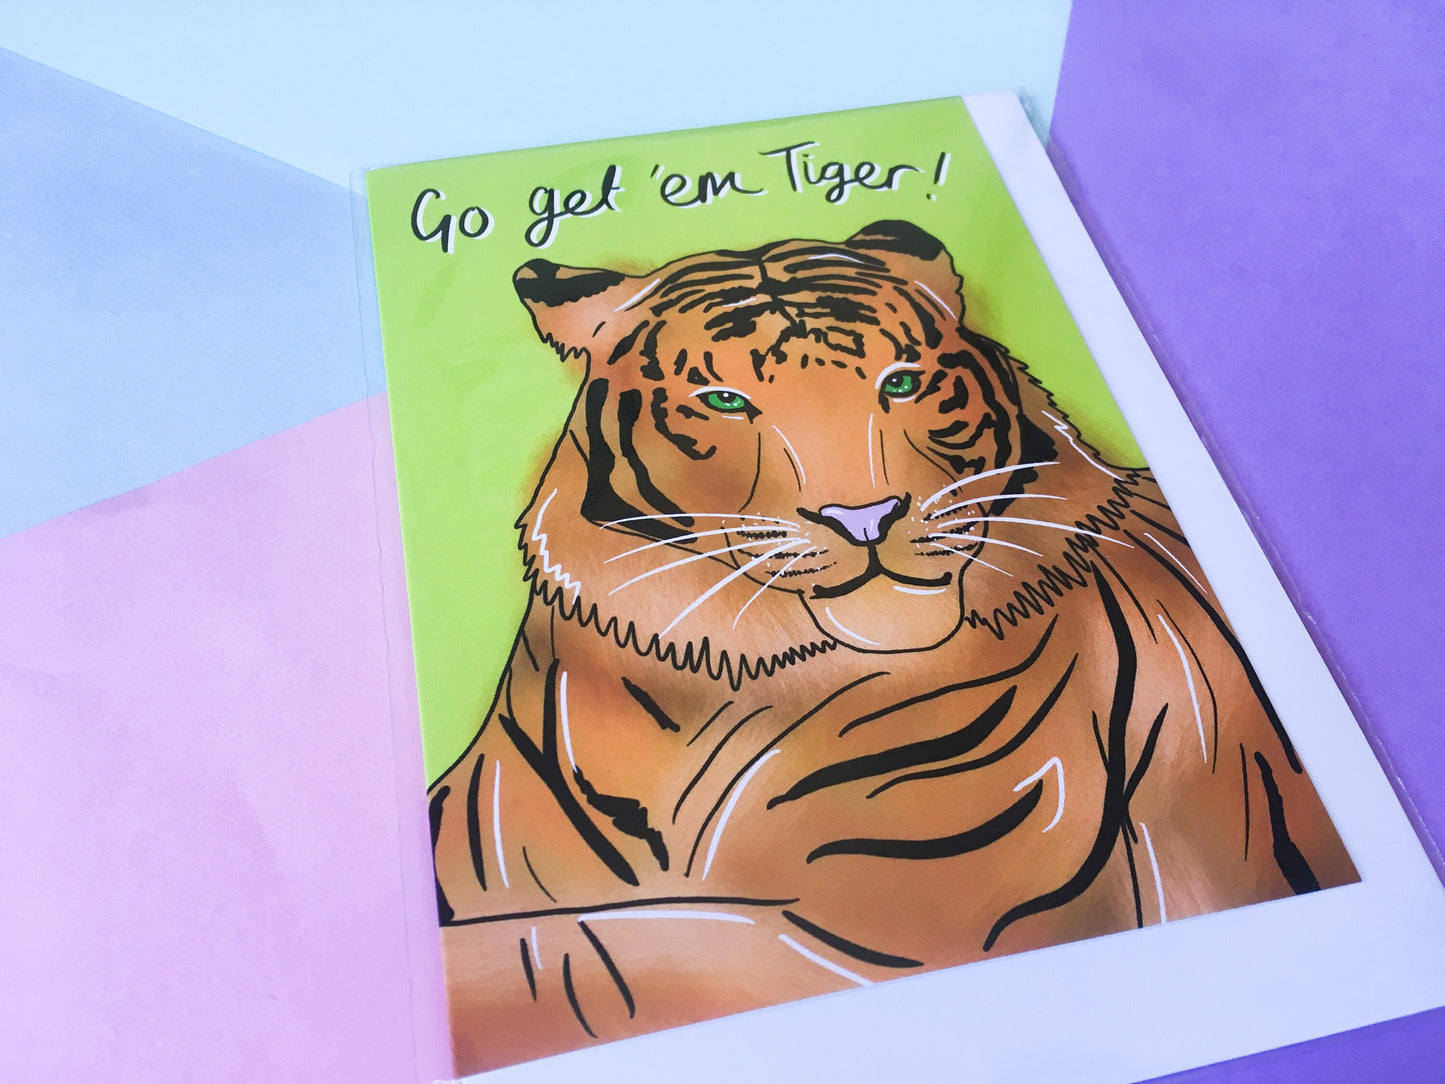 Go Get 'em Tiger Greeting Card, Motivational Card